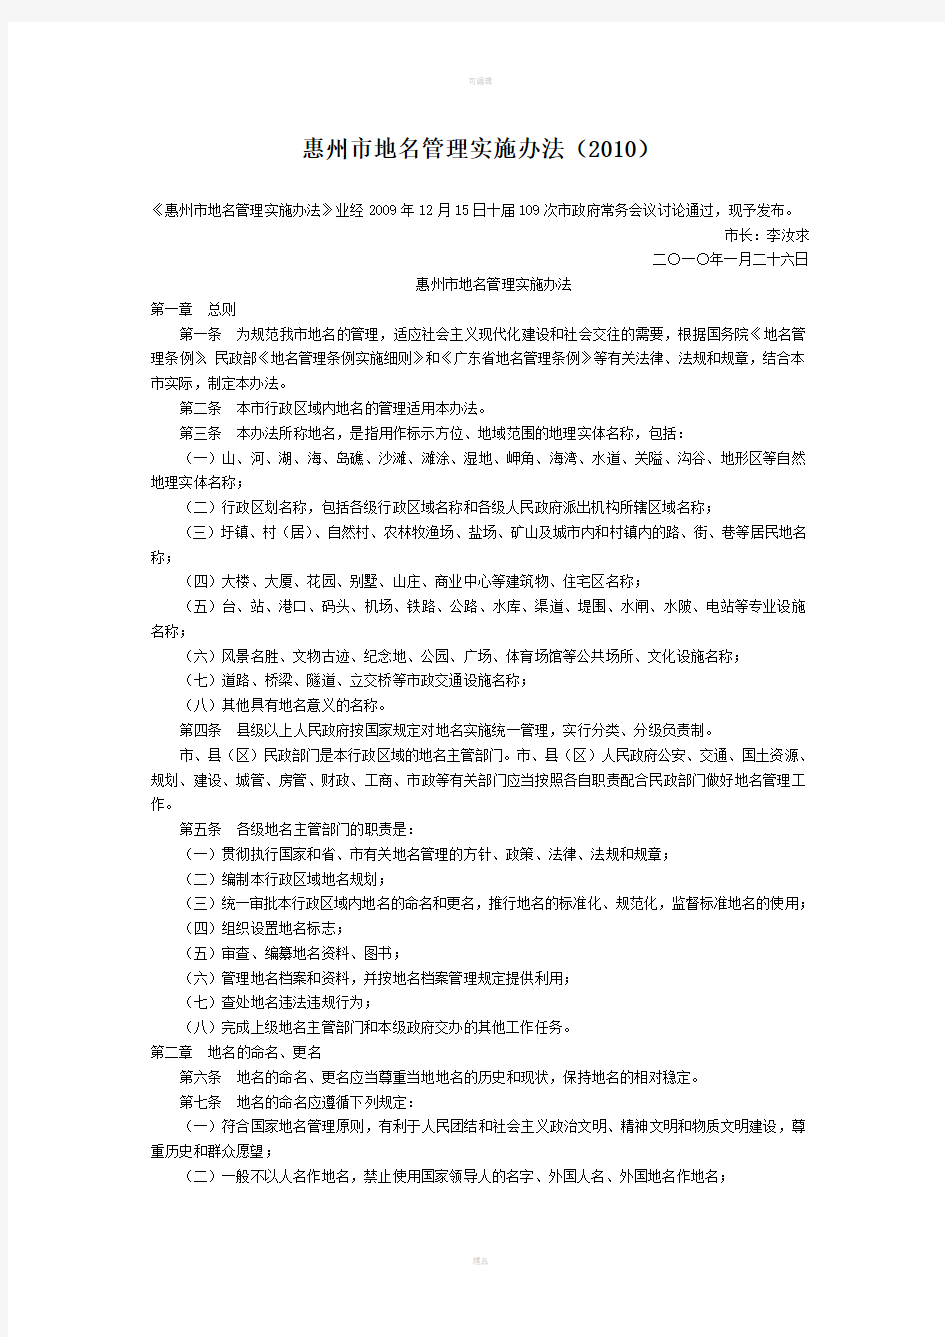 惠州市地名管理实施办法-地方司法规范